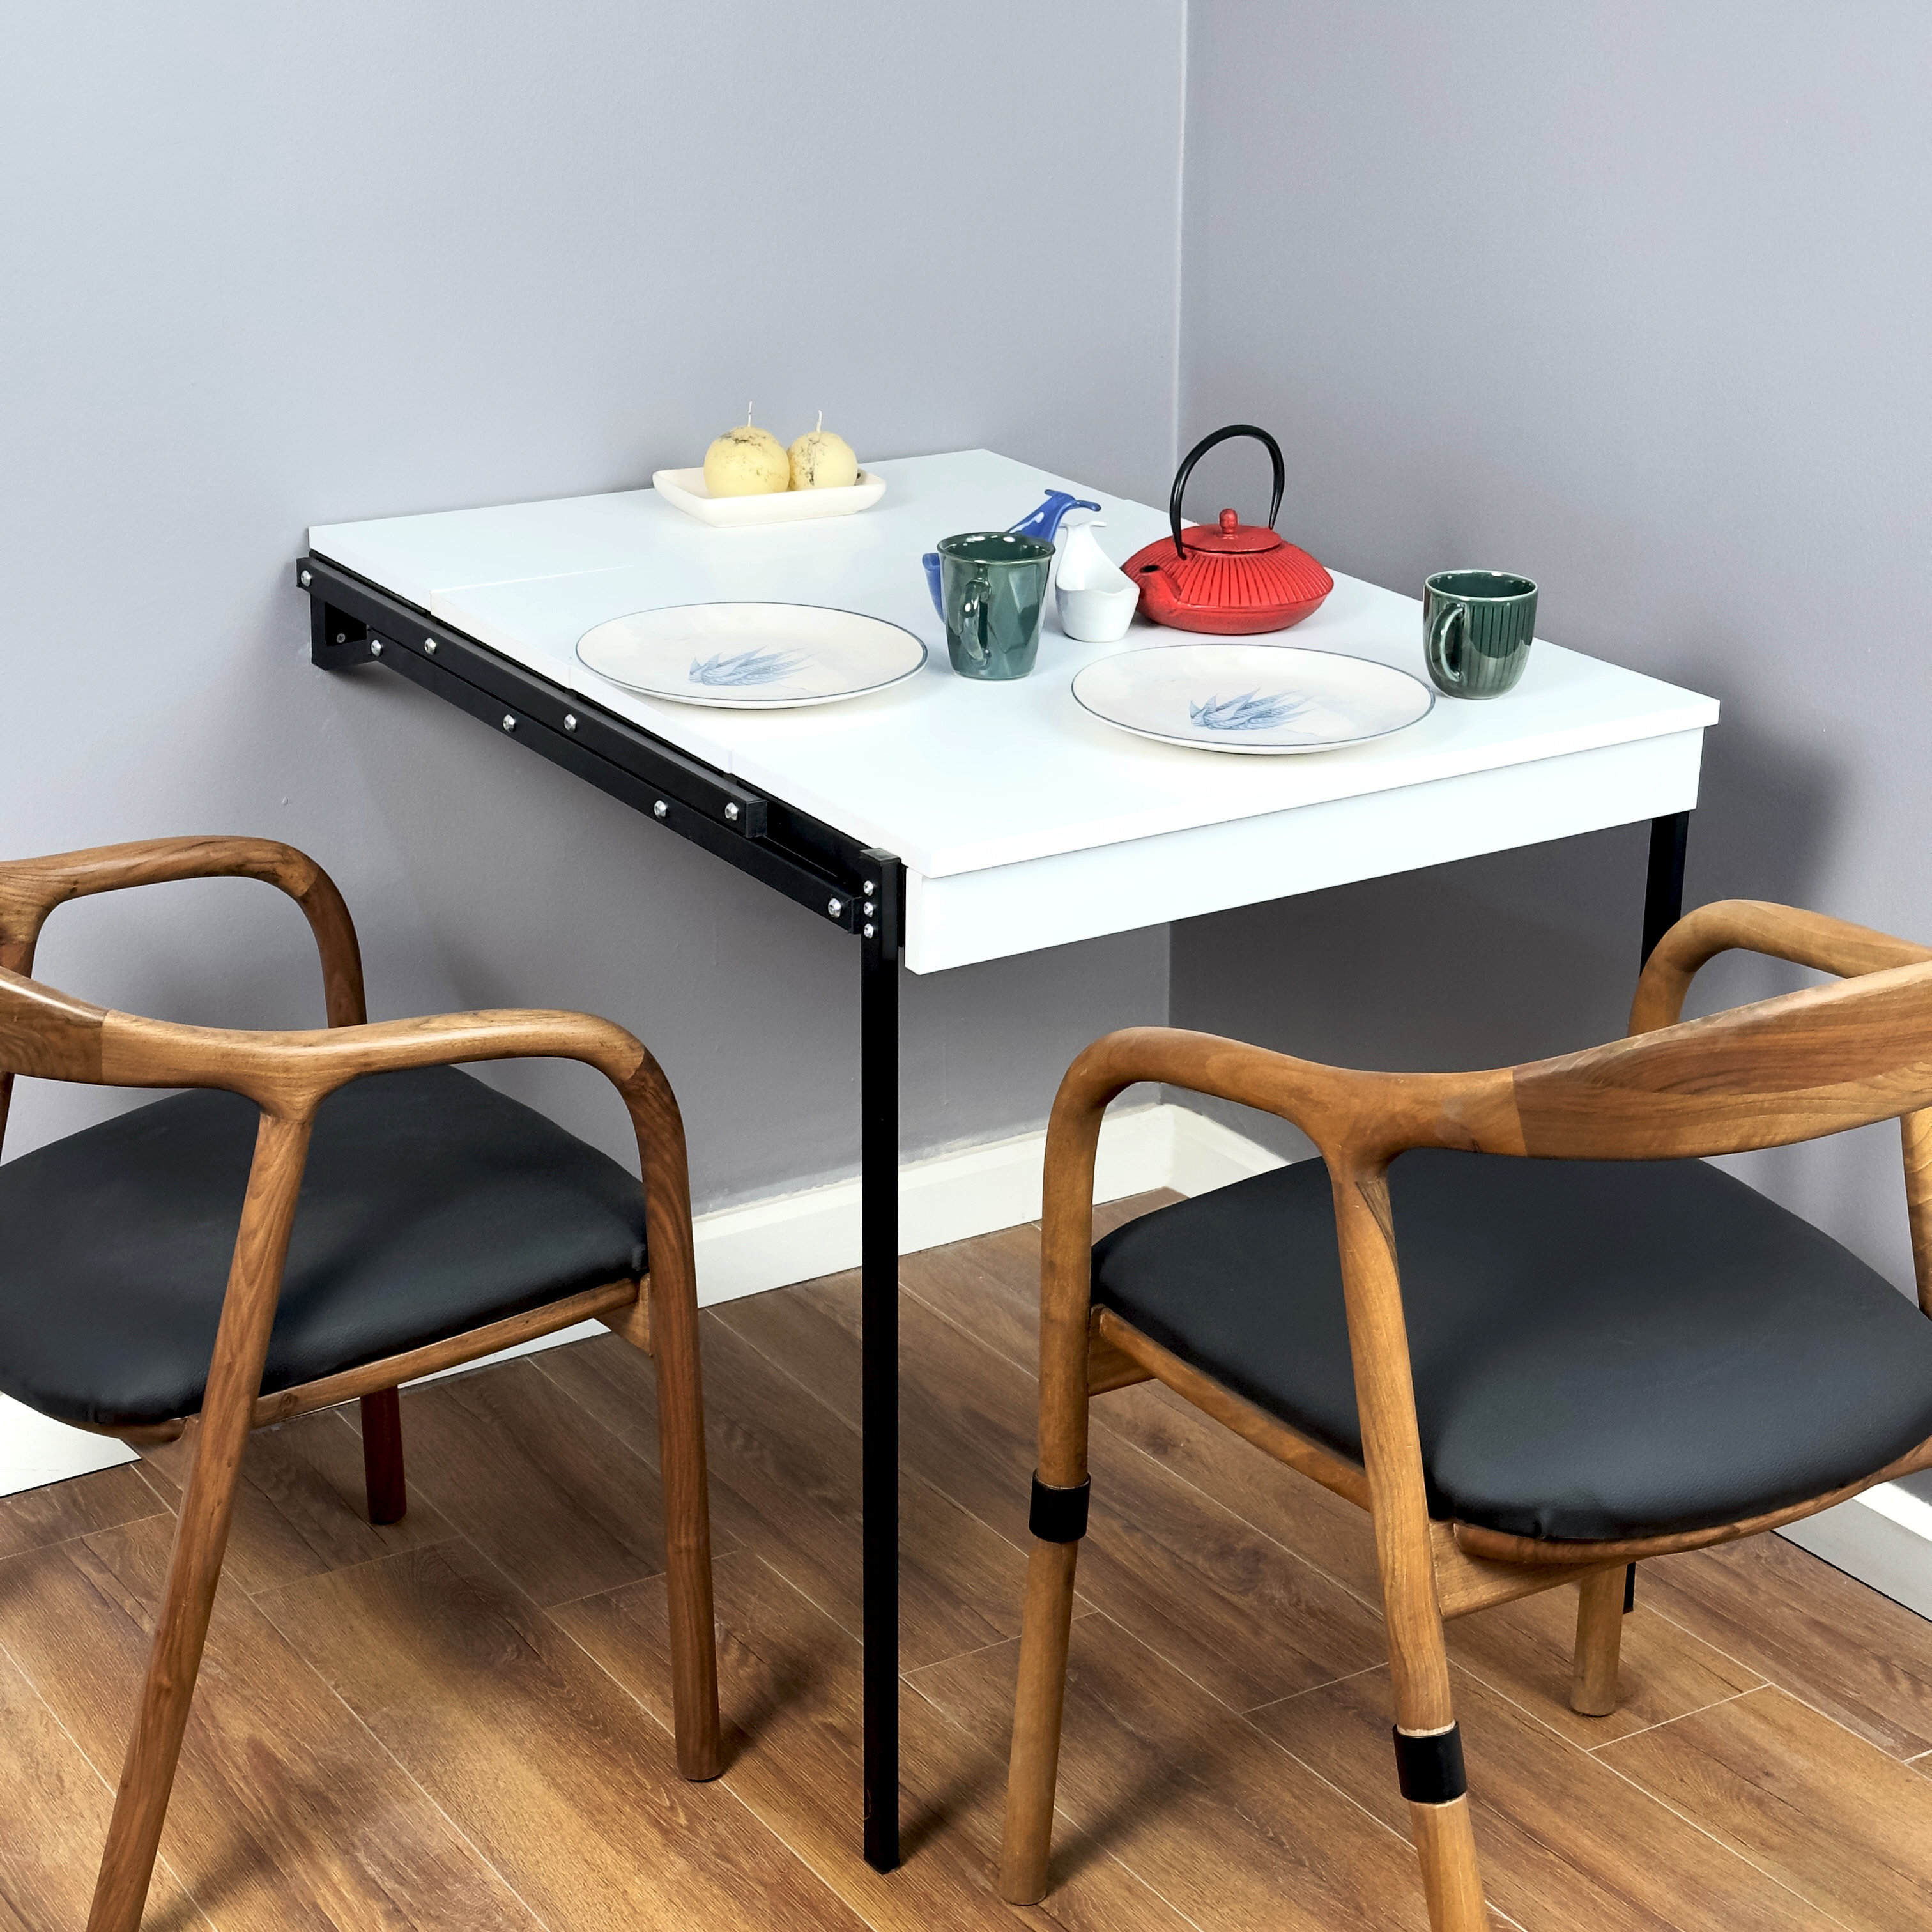 DANLONG 47'' Rectangular Folding Dining Table & Reviews - Wayfair